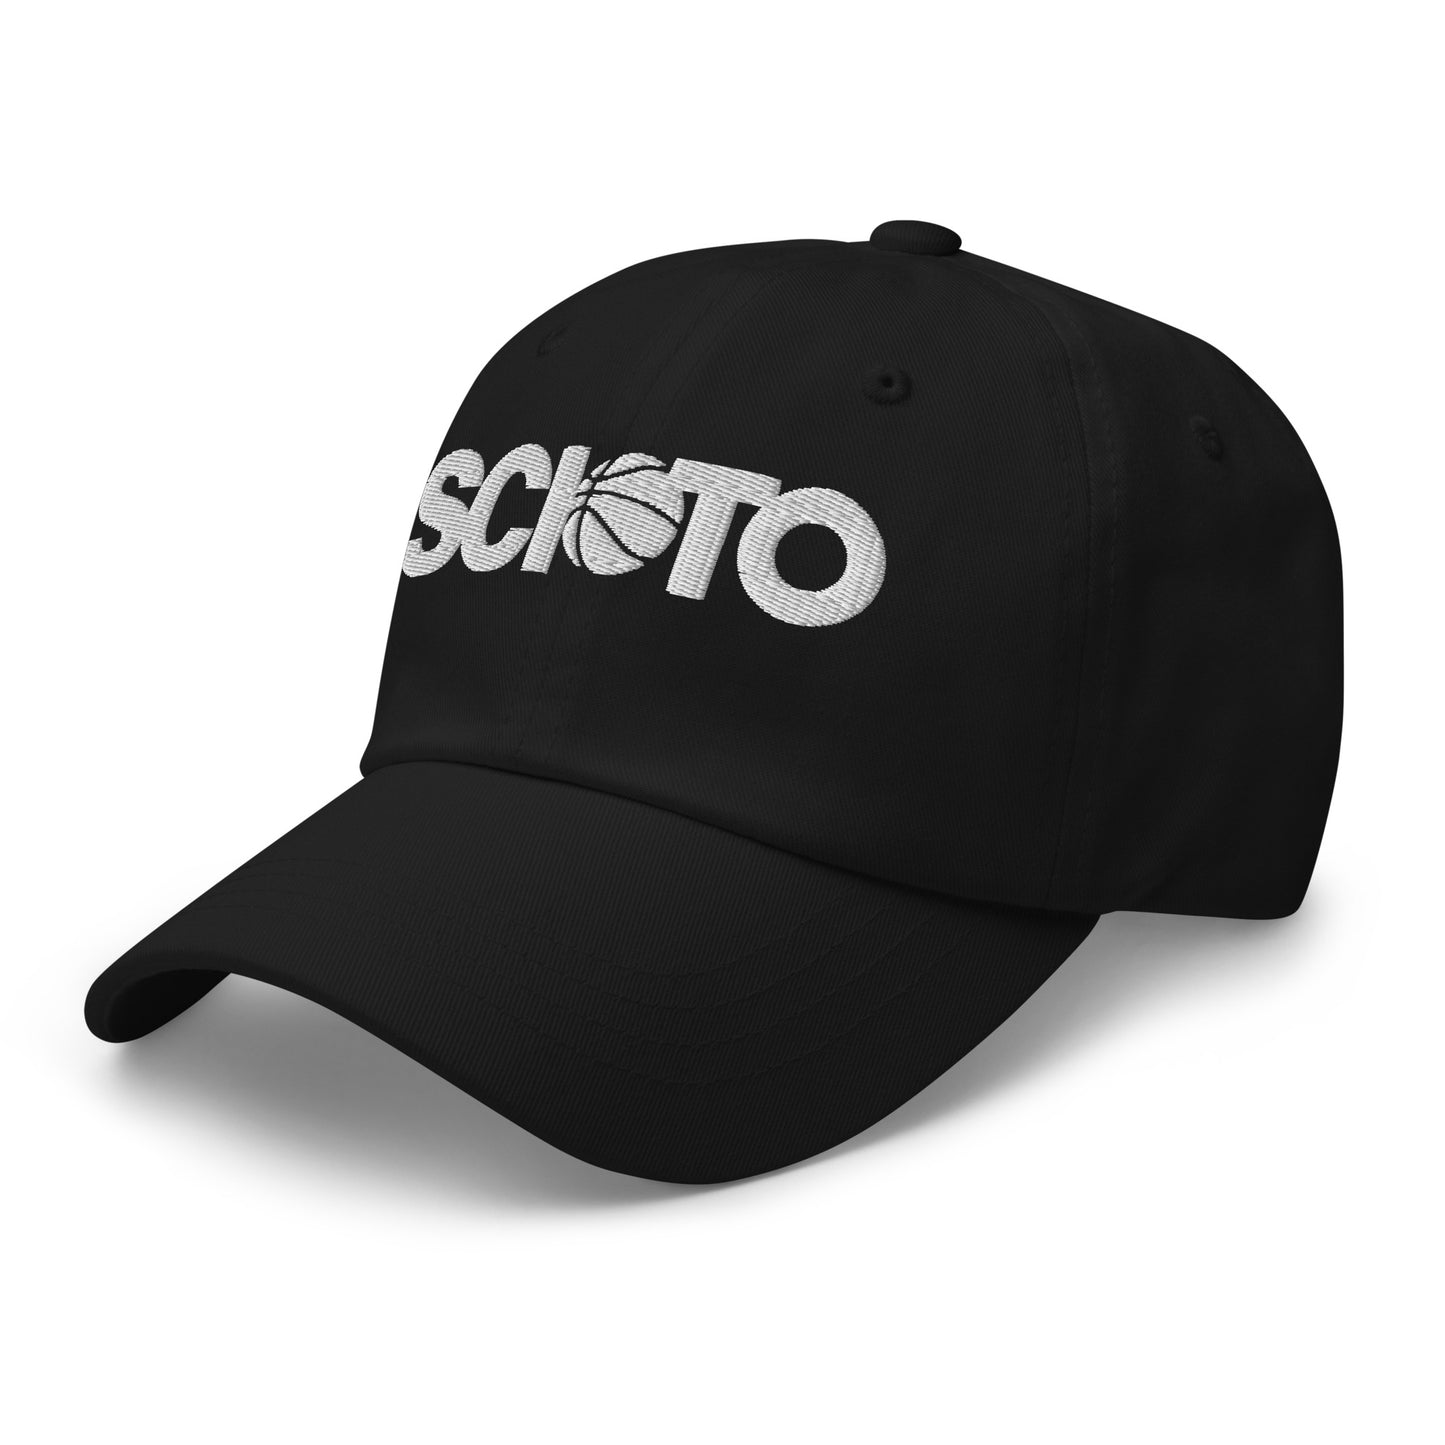 SCIOTO_BASKETBALL-twill hat